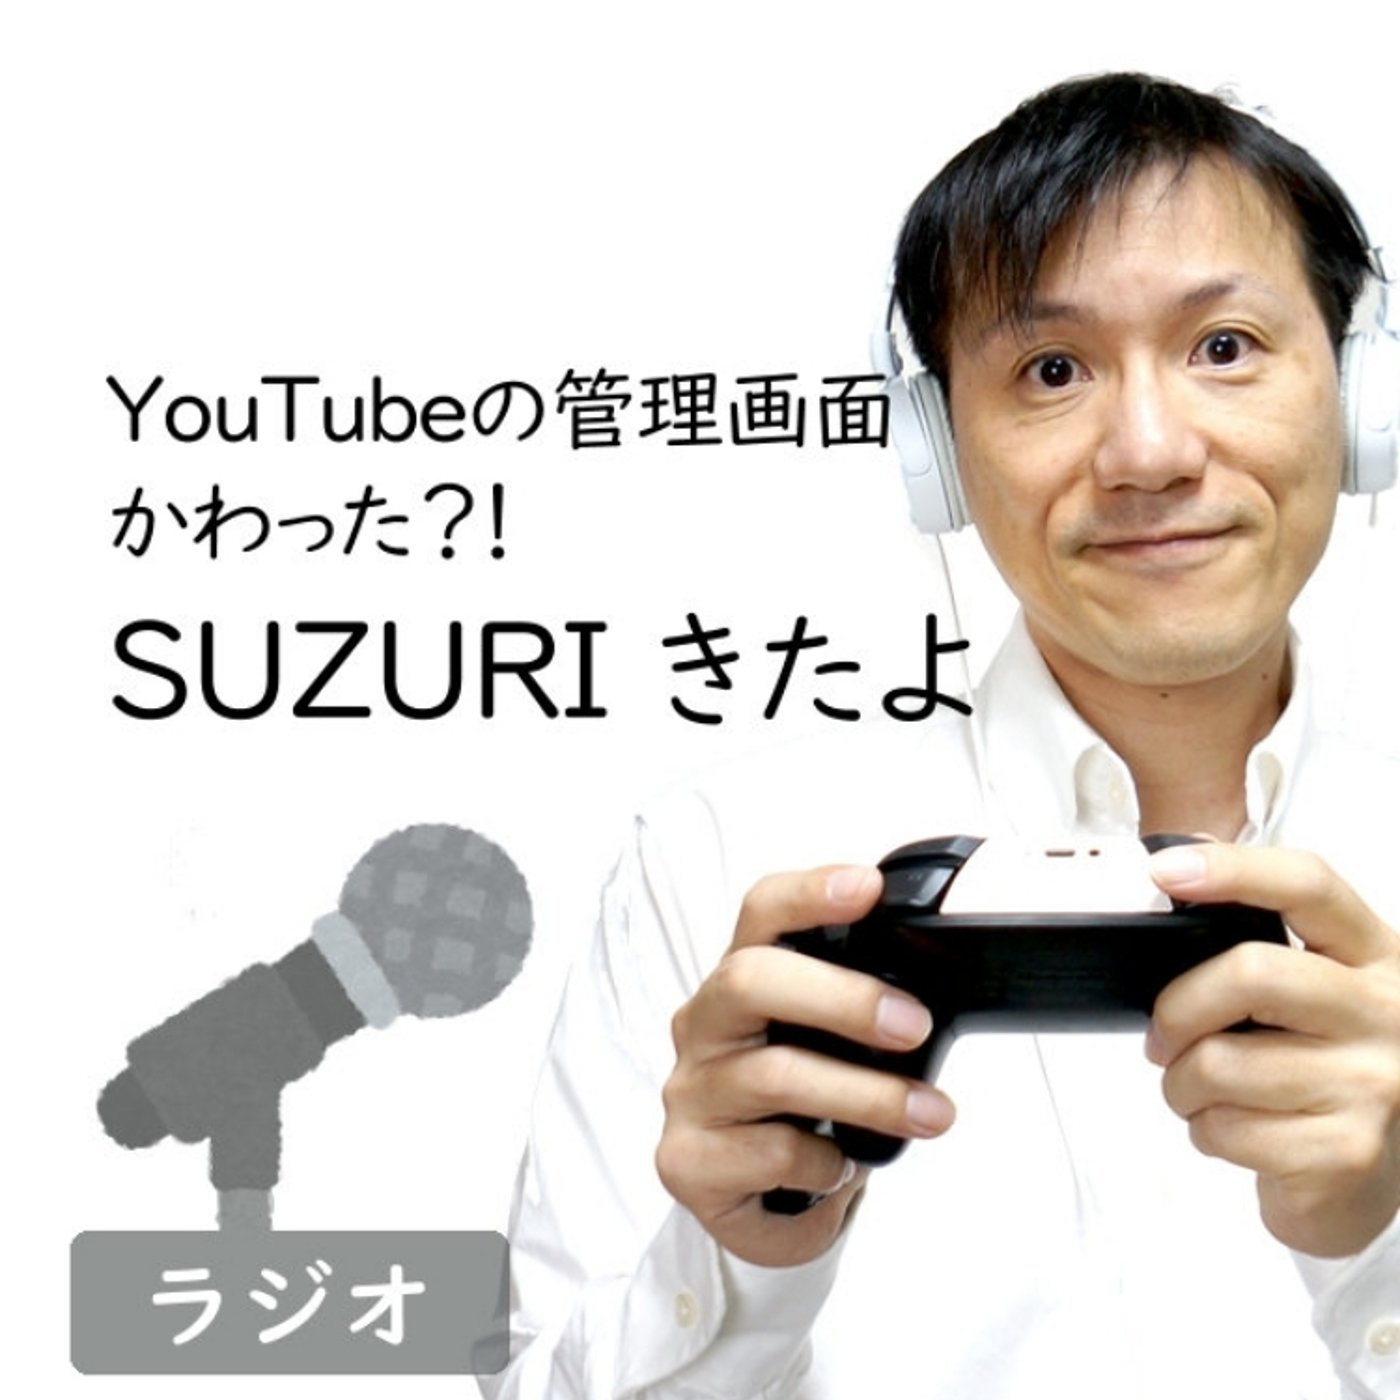 【#250】わーい！YouTubeとSUZURIが連携してるぞ